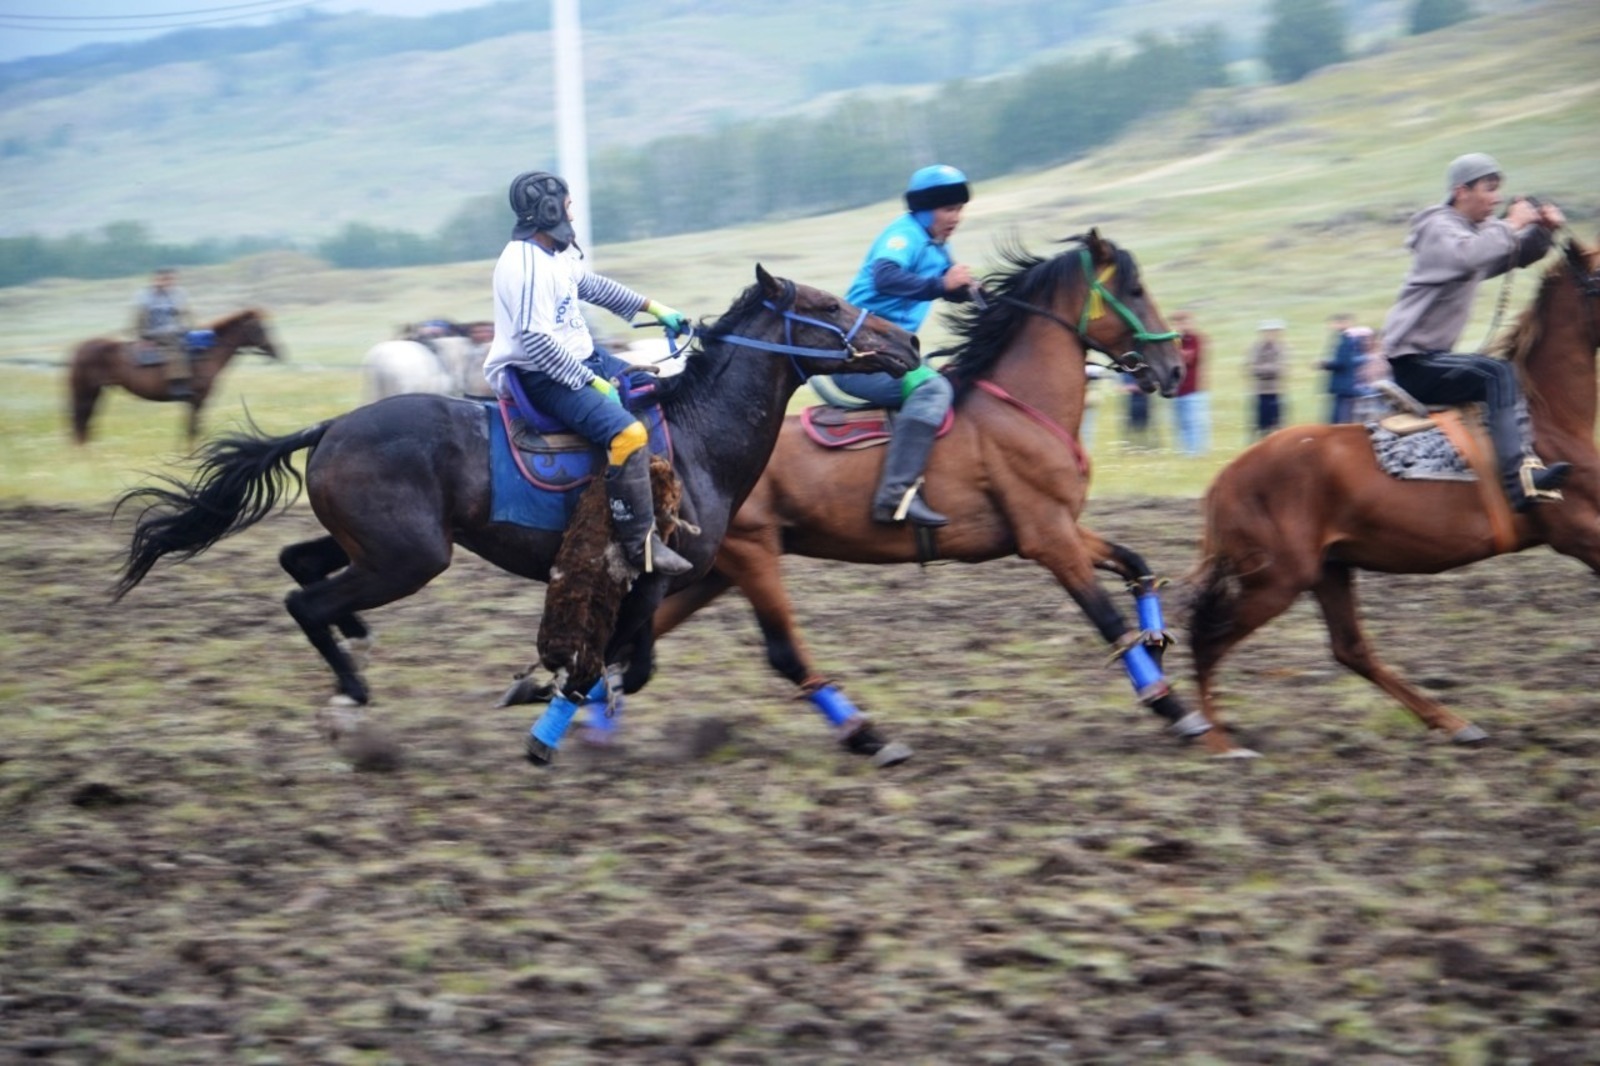 Фестиваль башкирской лошади начался с конноспортивных состязаний